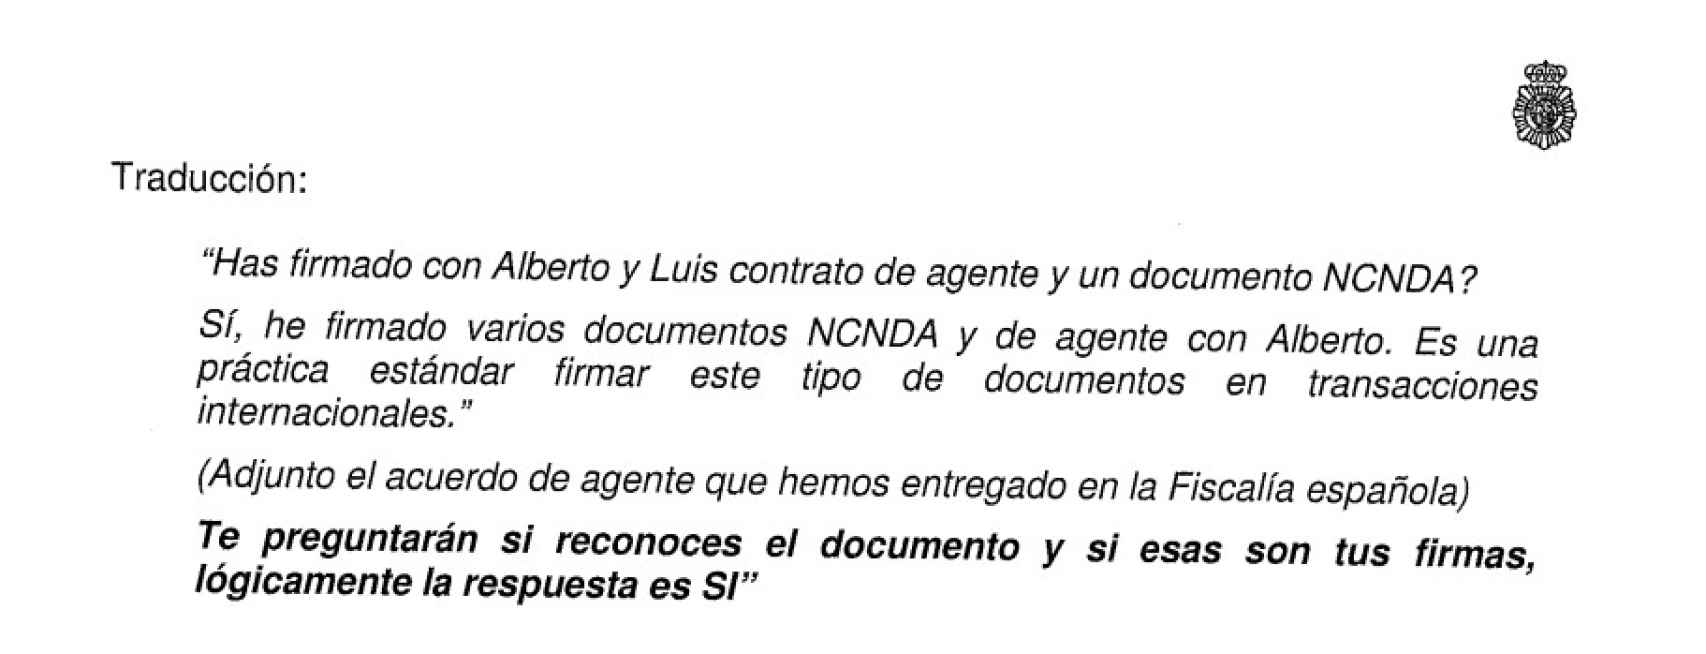 Fragmento del informe policial que recoge las conversaciones entre Luceño y Anthony.